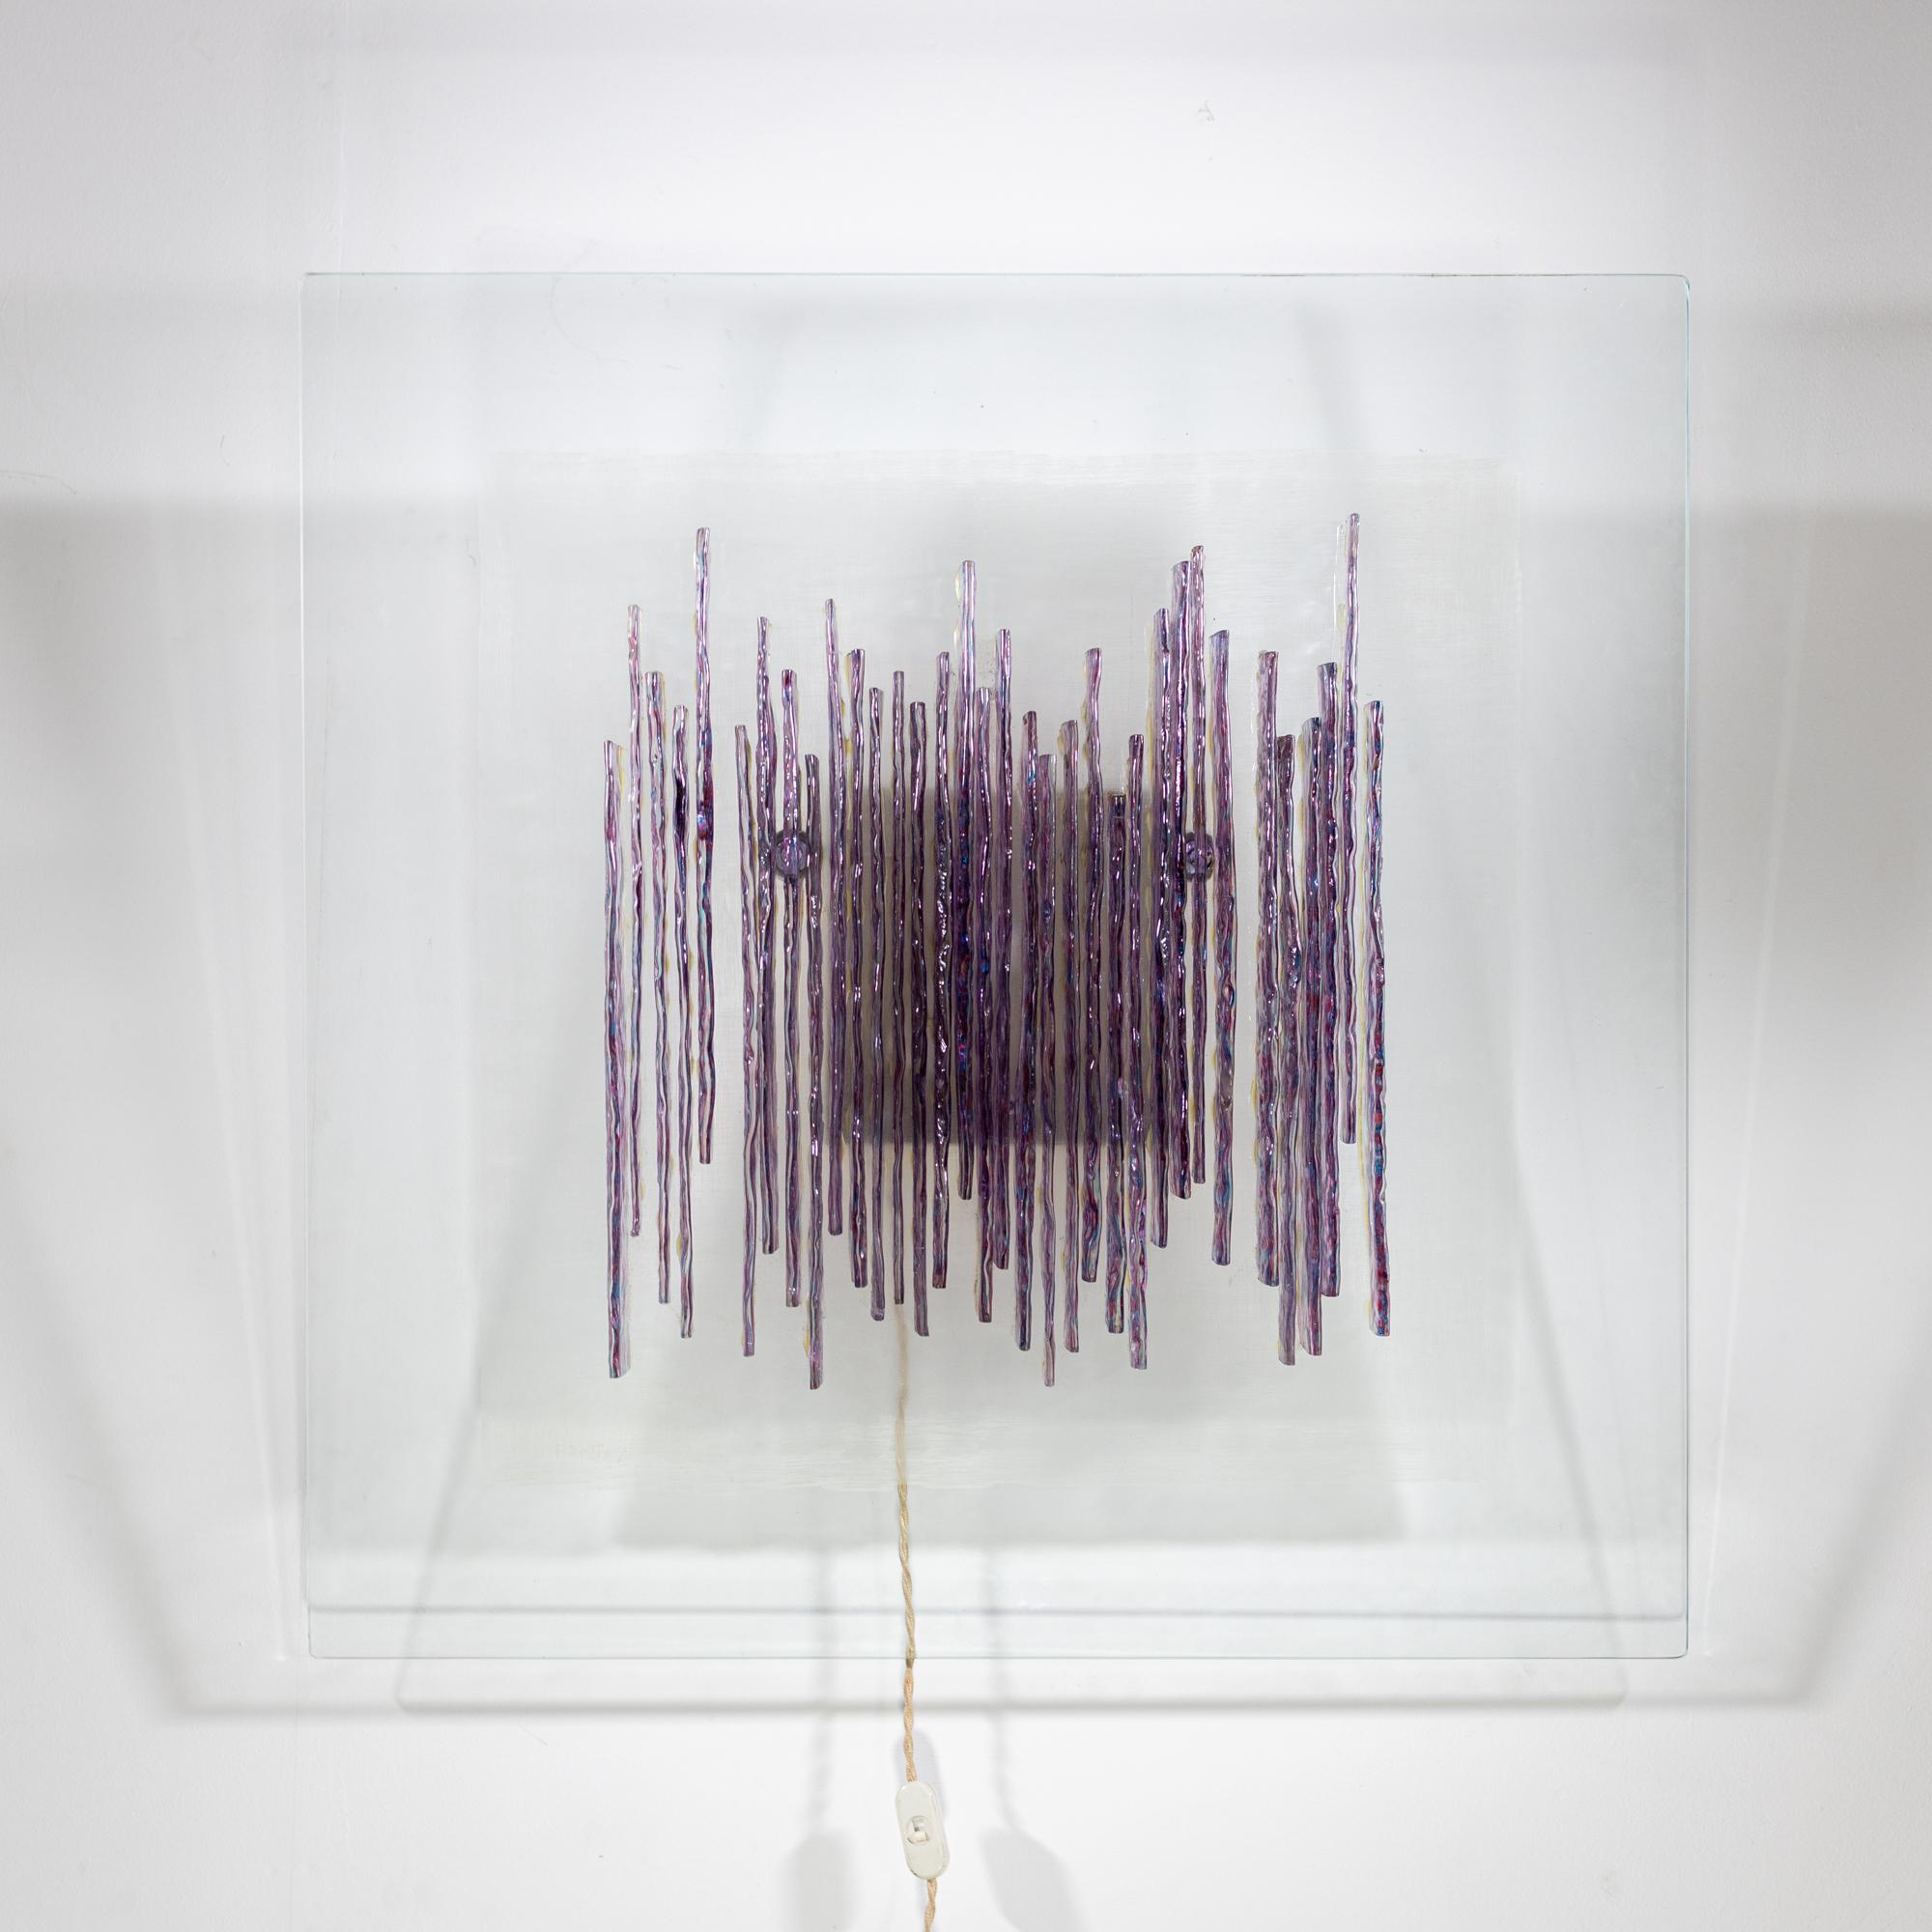 Angelo Brotto Modernist Art Glass Wandleuchte.
Vertikales violettes Kunstglas auf einem von hinten beleuchteten Klarglassockel, 
signiert und datiert in der linken unteren Ecke.